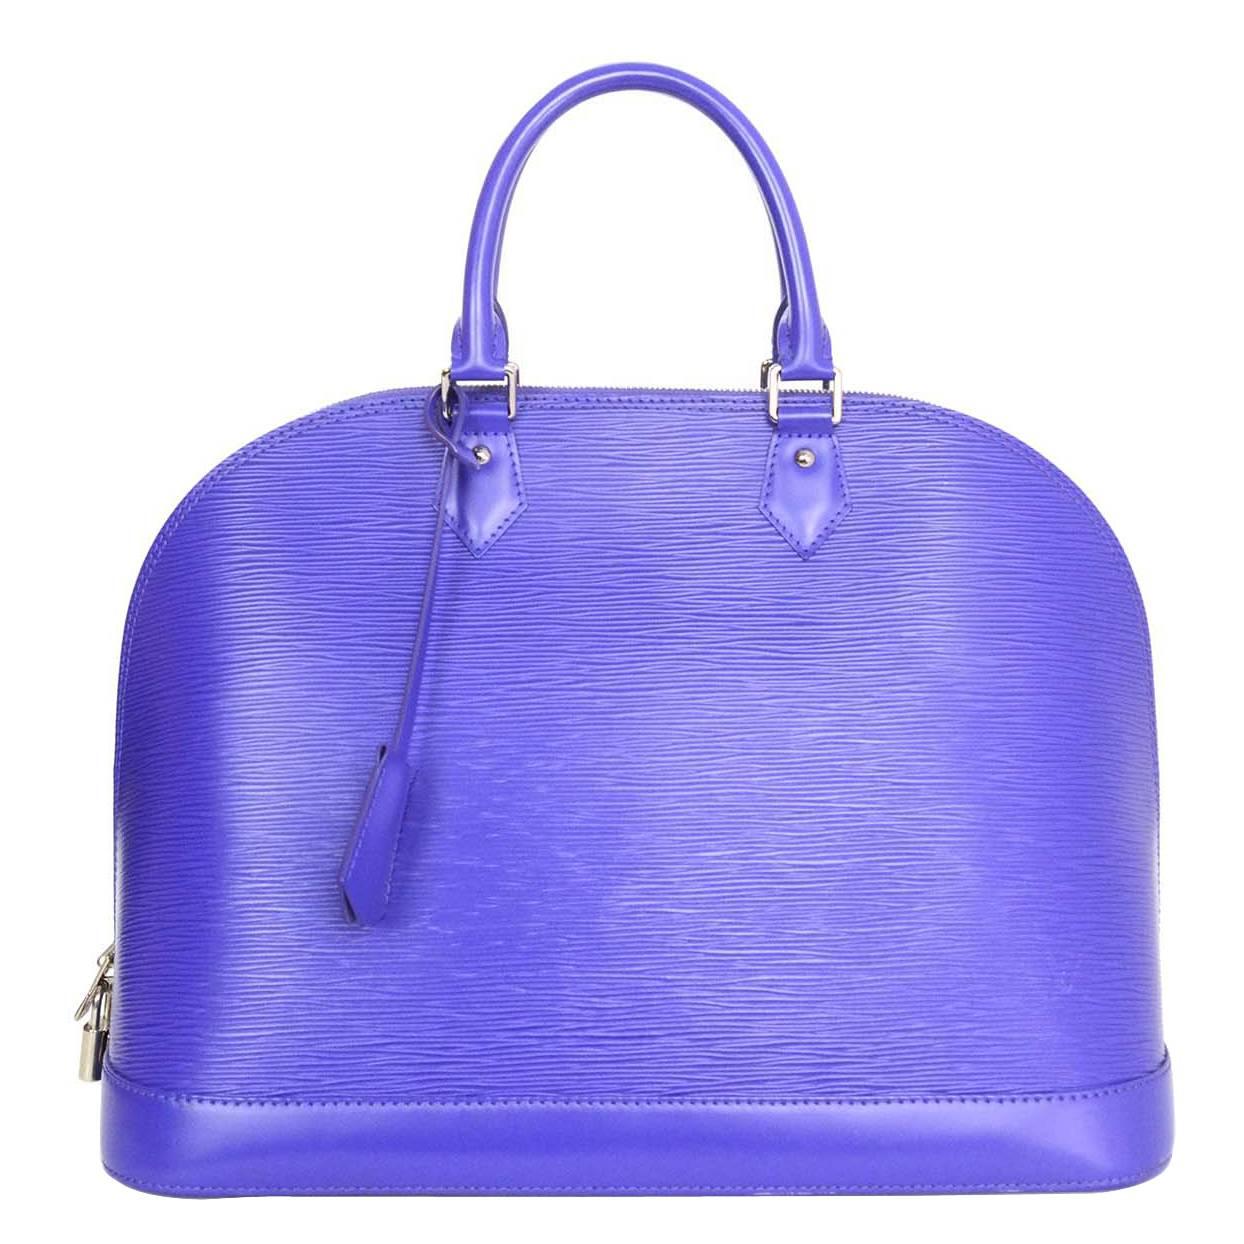 Louis Vuitton Figue Purple Epi Leather Alma GM Satchel Bag rt. $3, 100